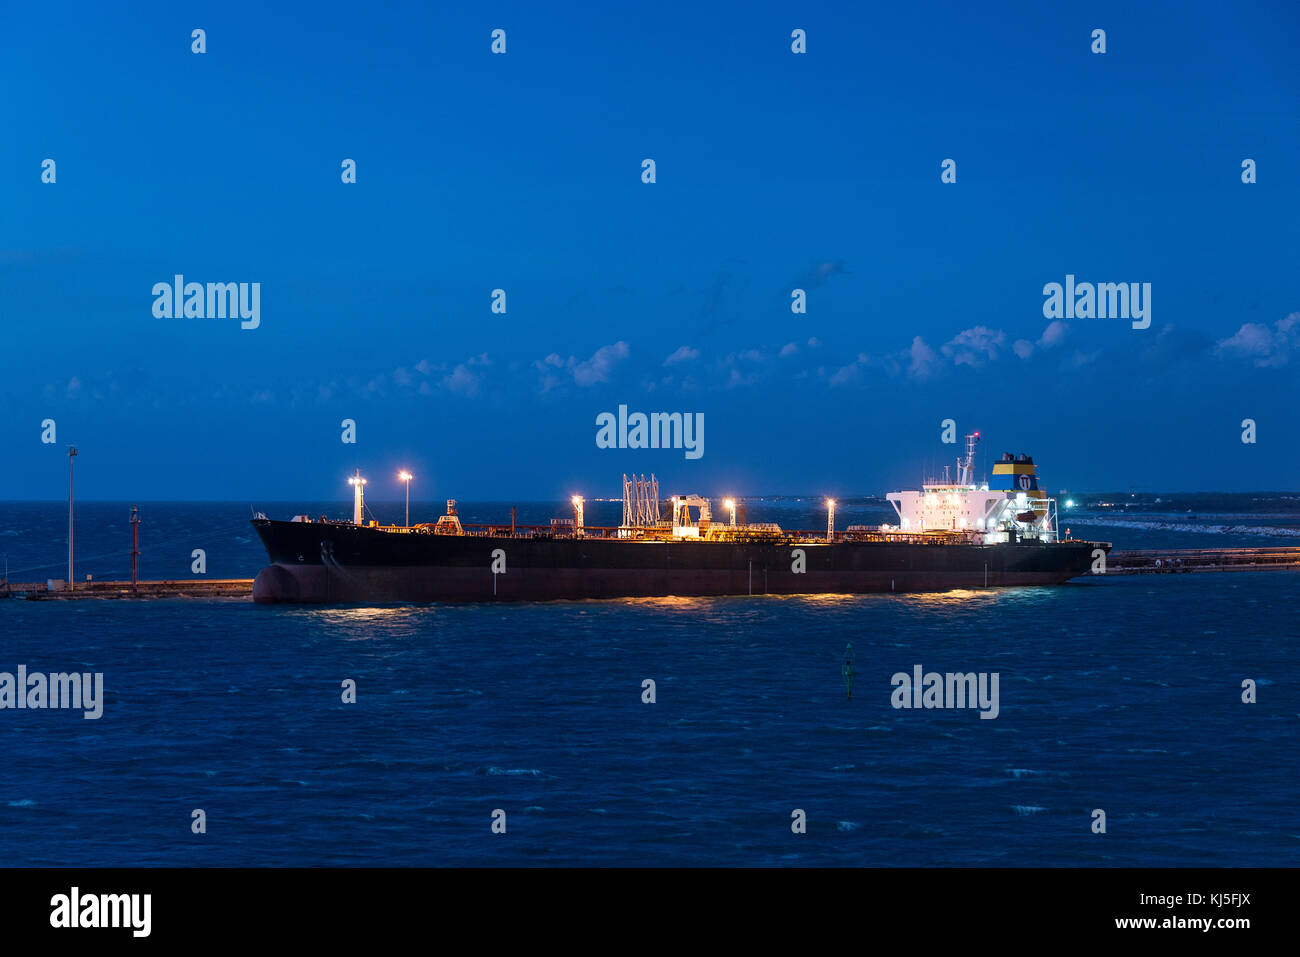 Crude oil tanker ship, Livorno, Italy. Stock Photo